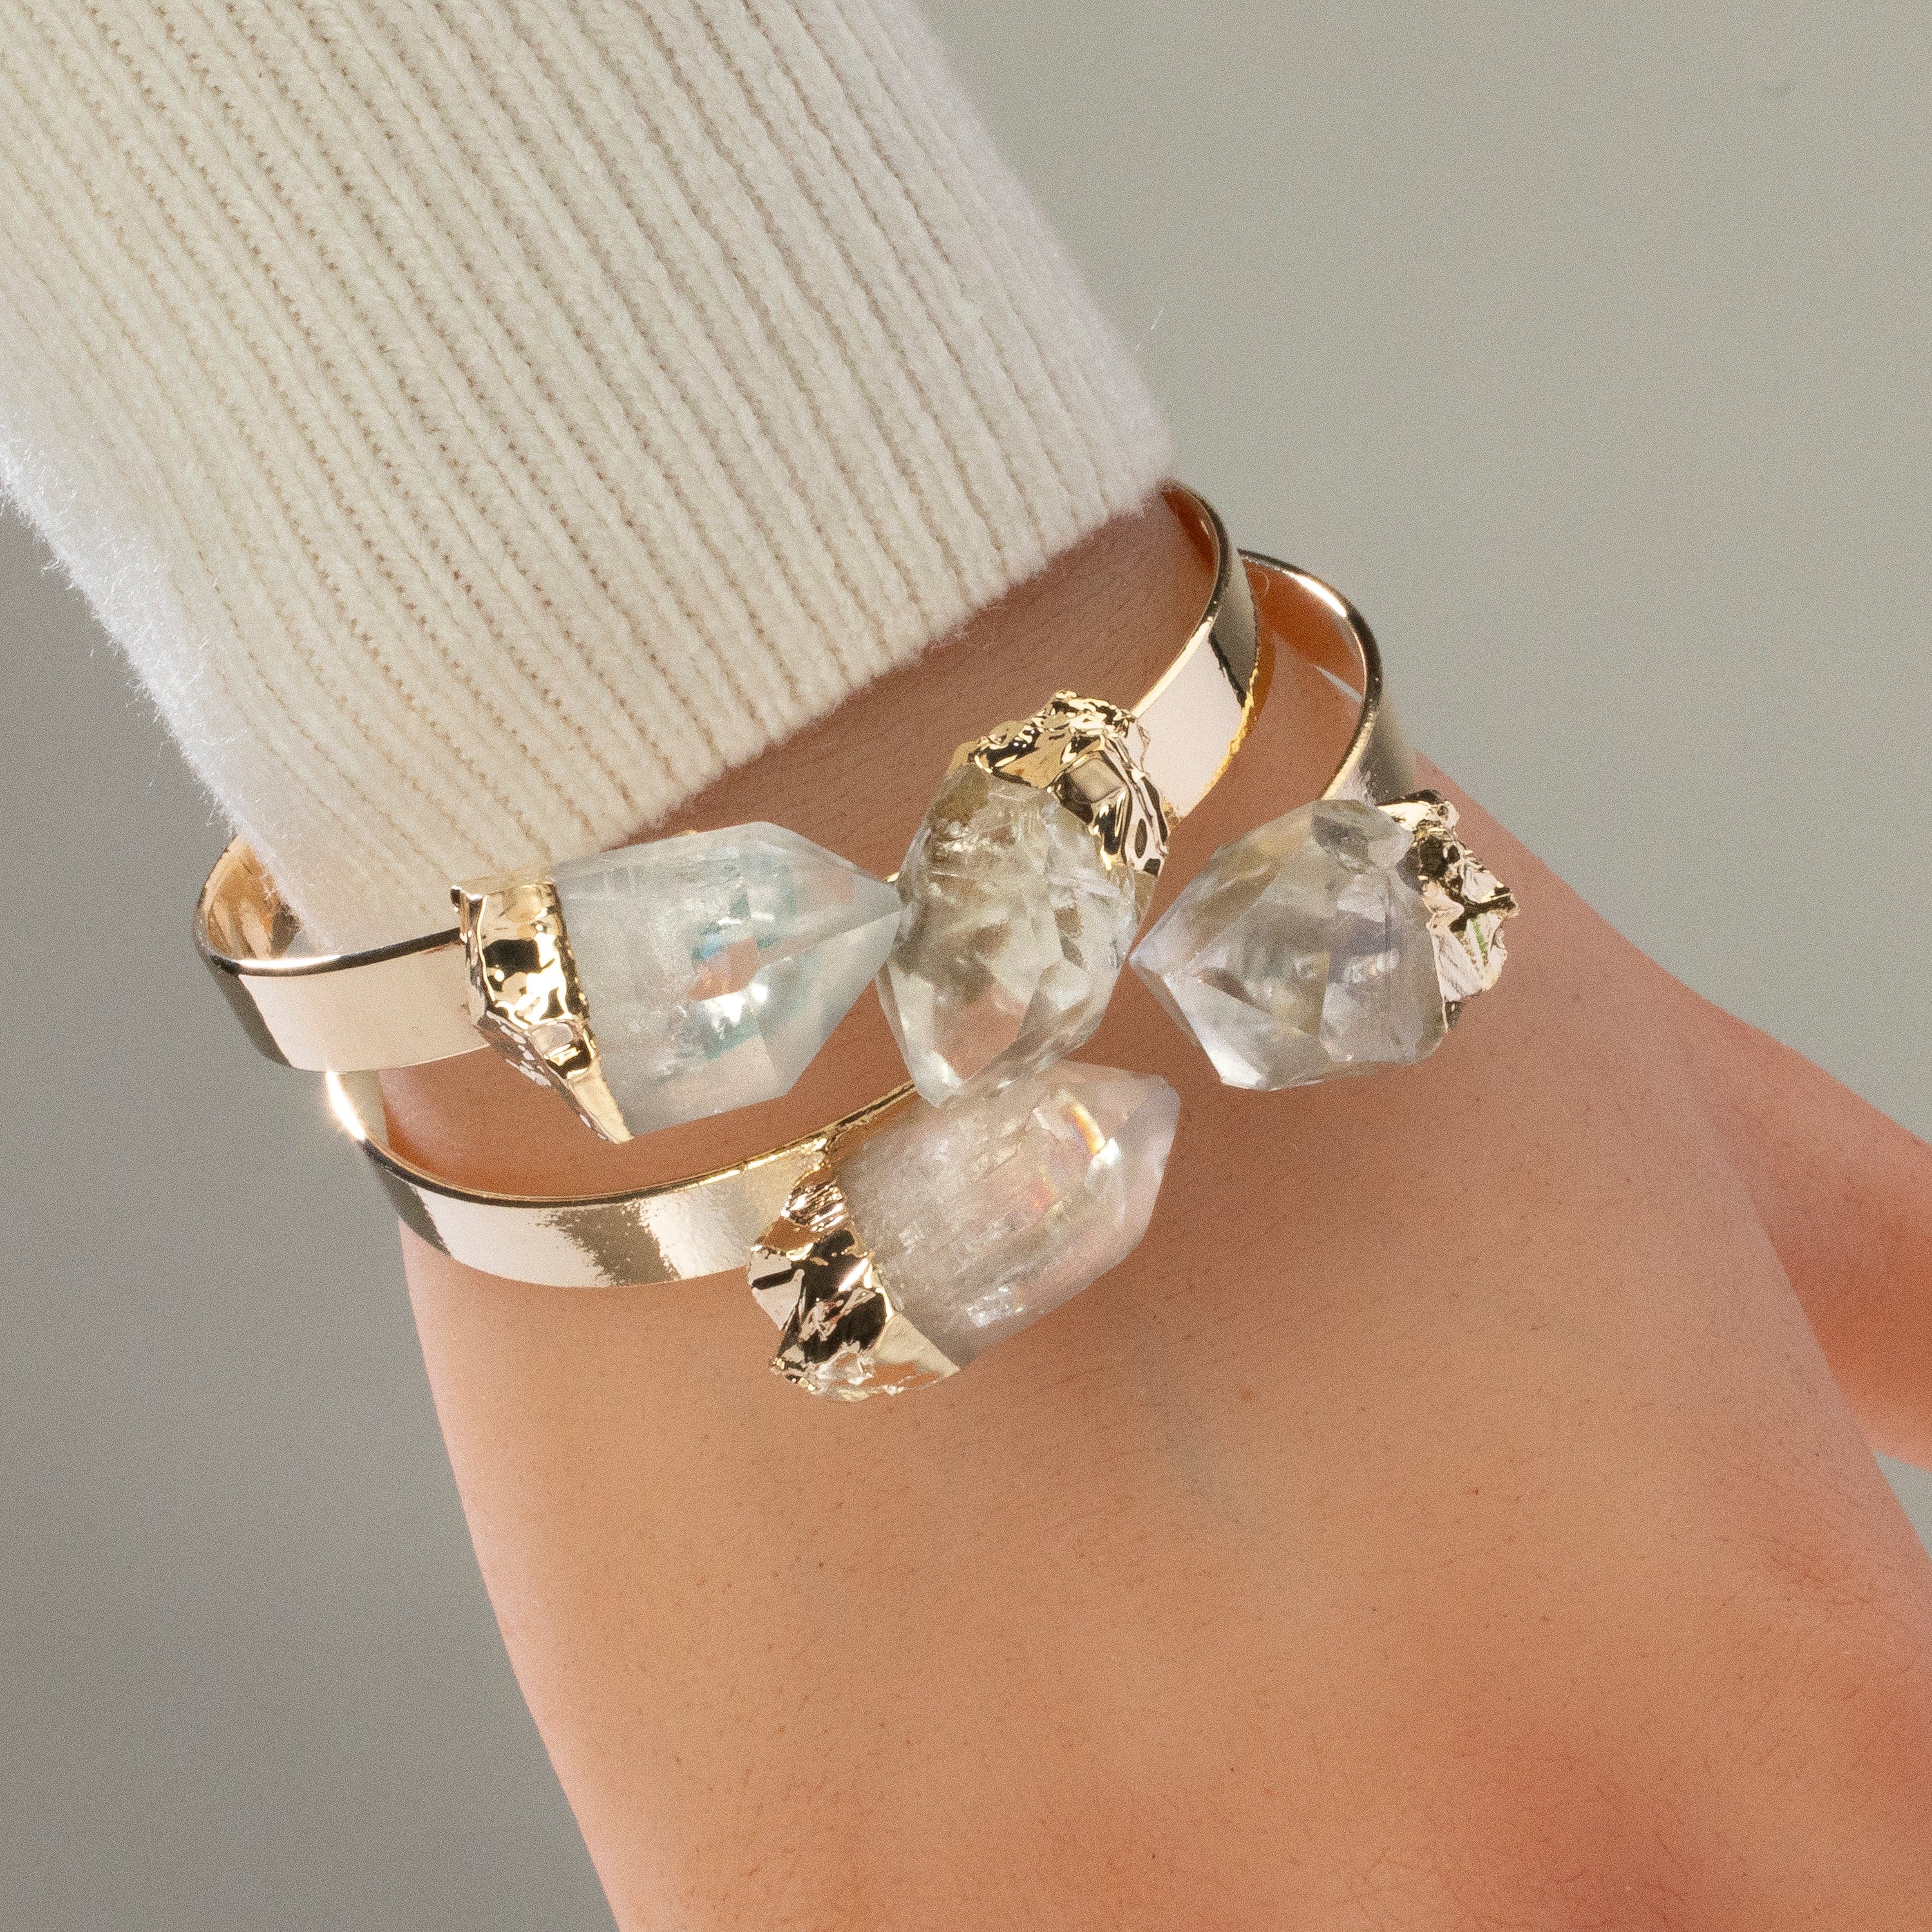 KALIFANO Crystal Jewelry Quartz Double Bracelet Cuff CJB-1012-QZ